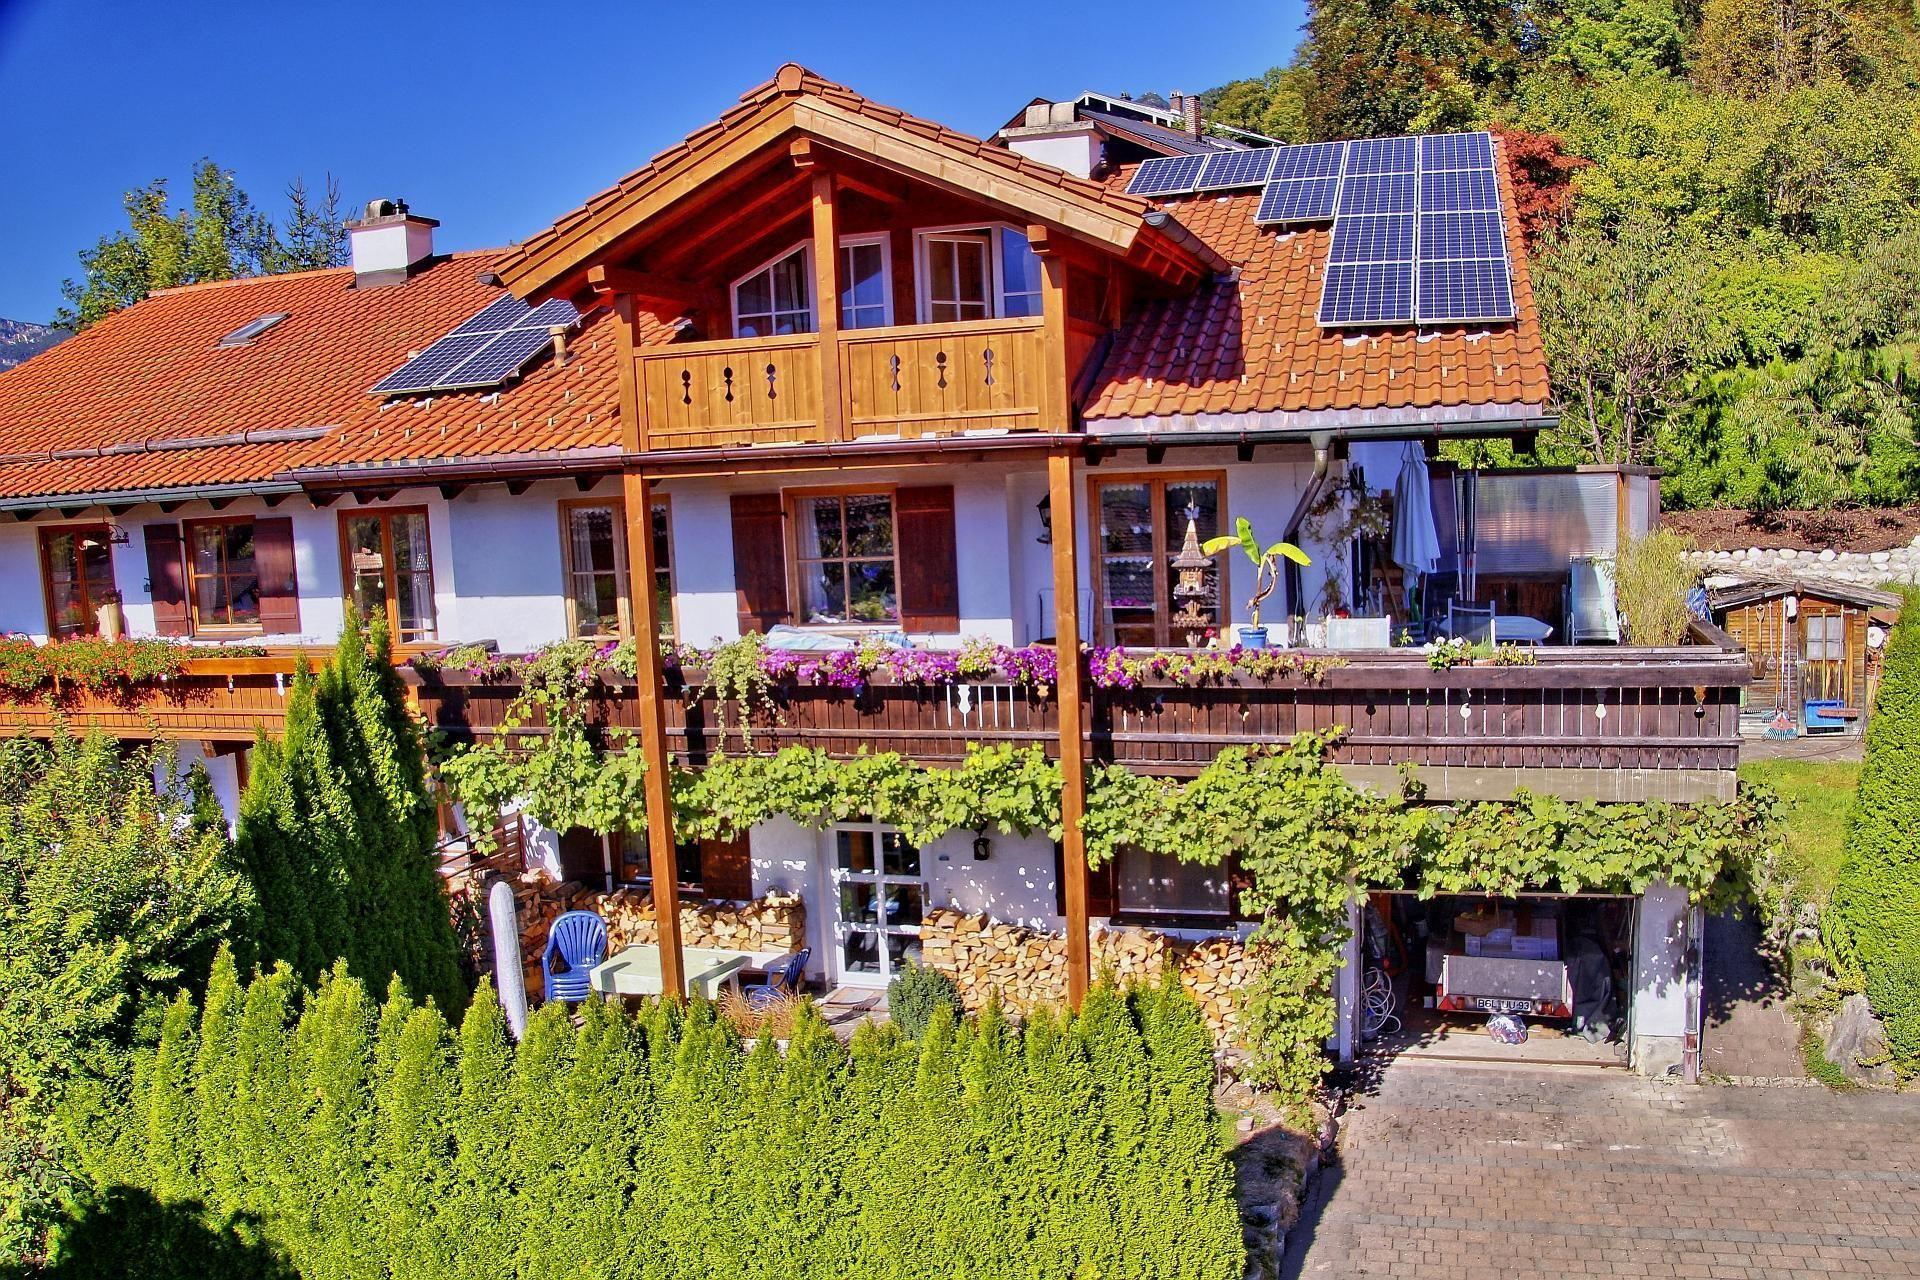 Wohnung in Stanggaß mit Garten, Grill und Te Ferienhaus in den Alpen